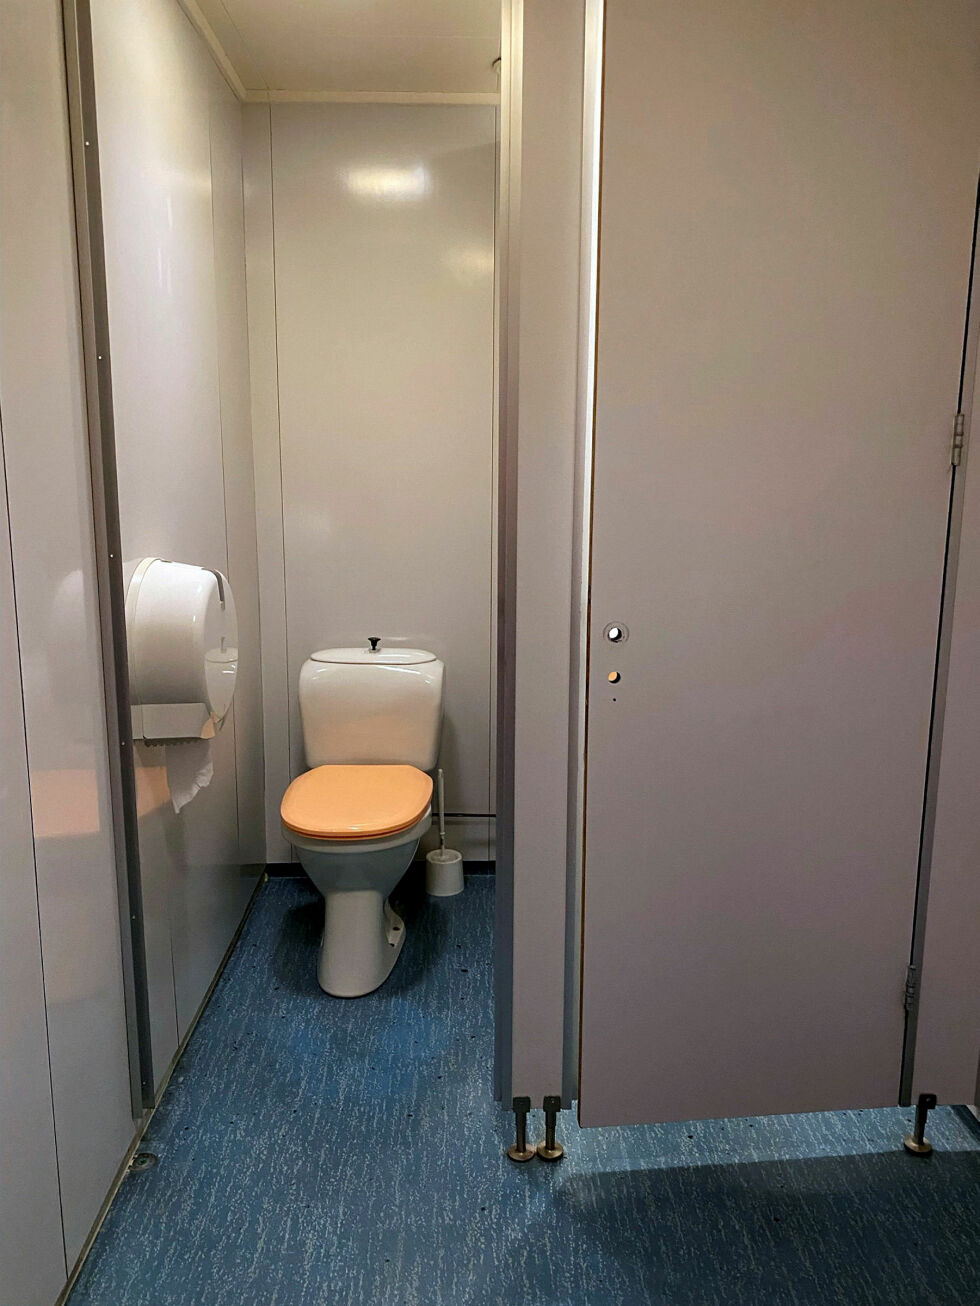 Det ene toalettet mangler dør.
 Foto: privat